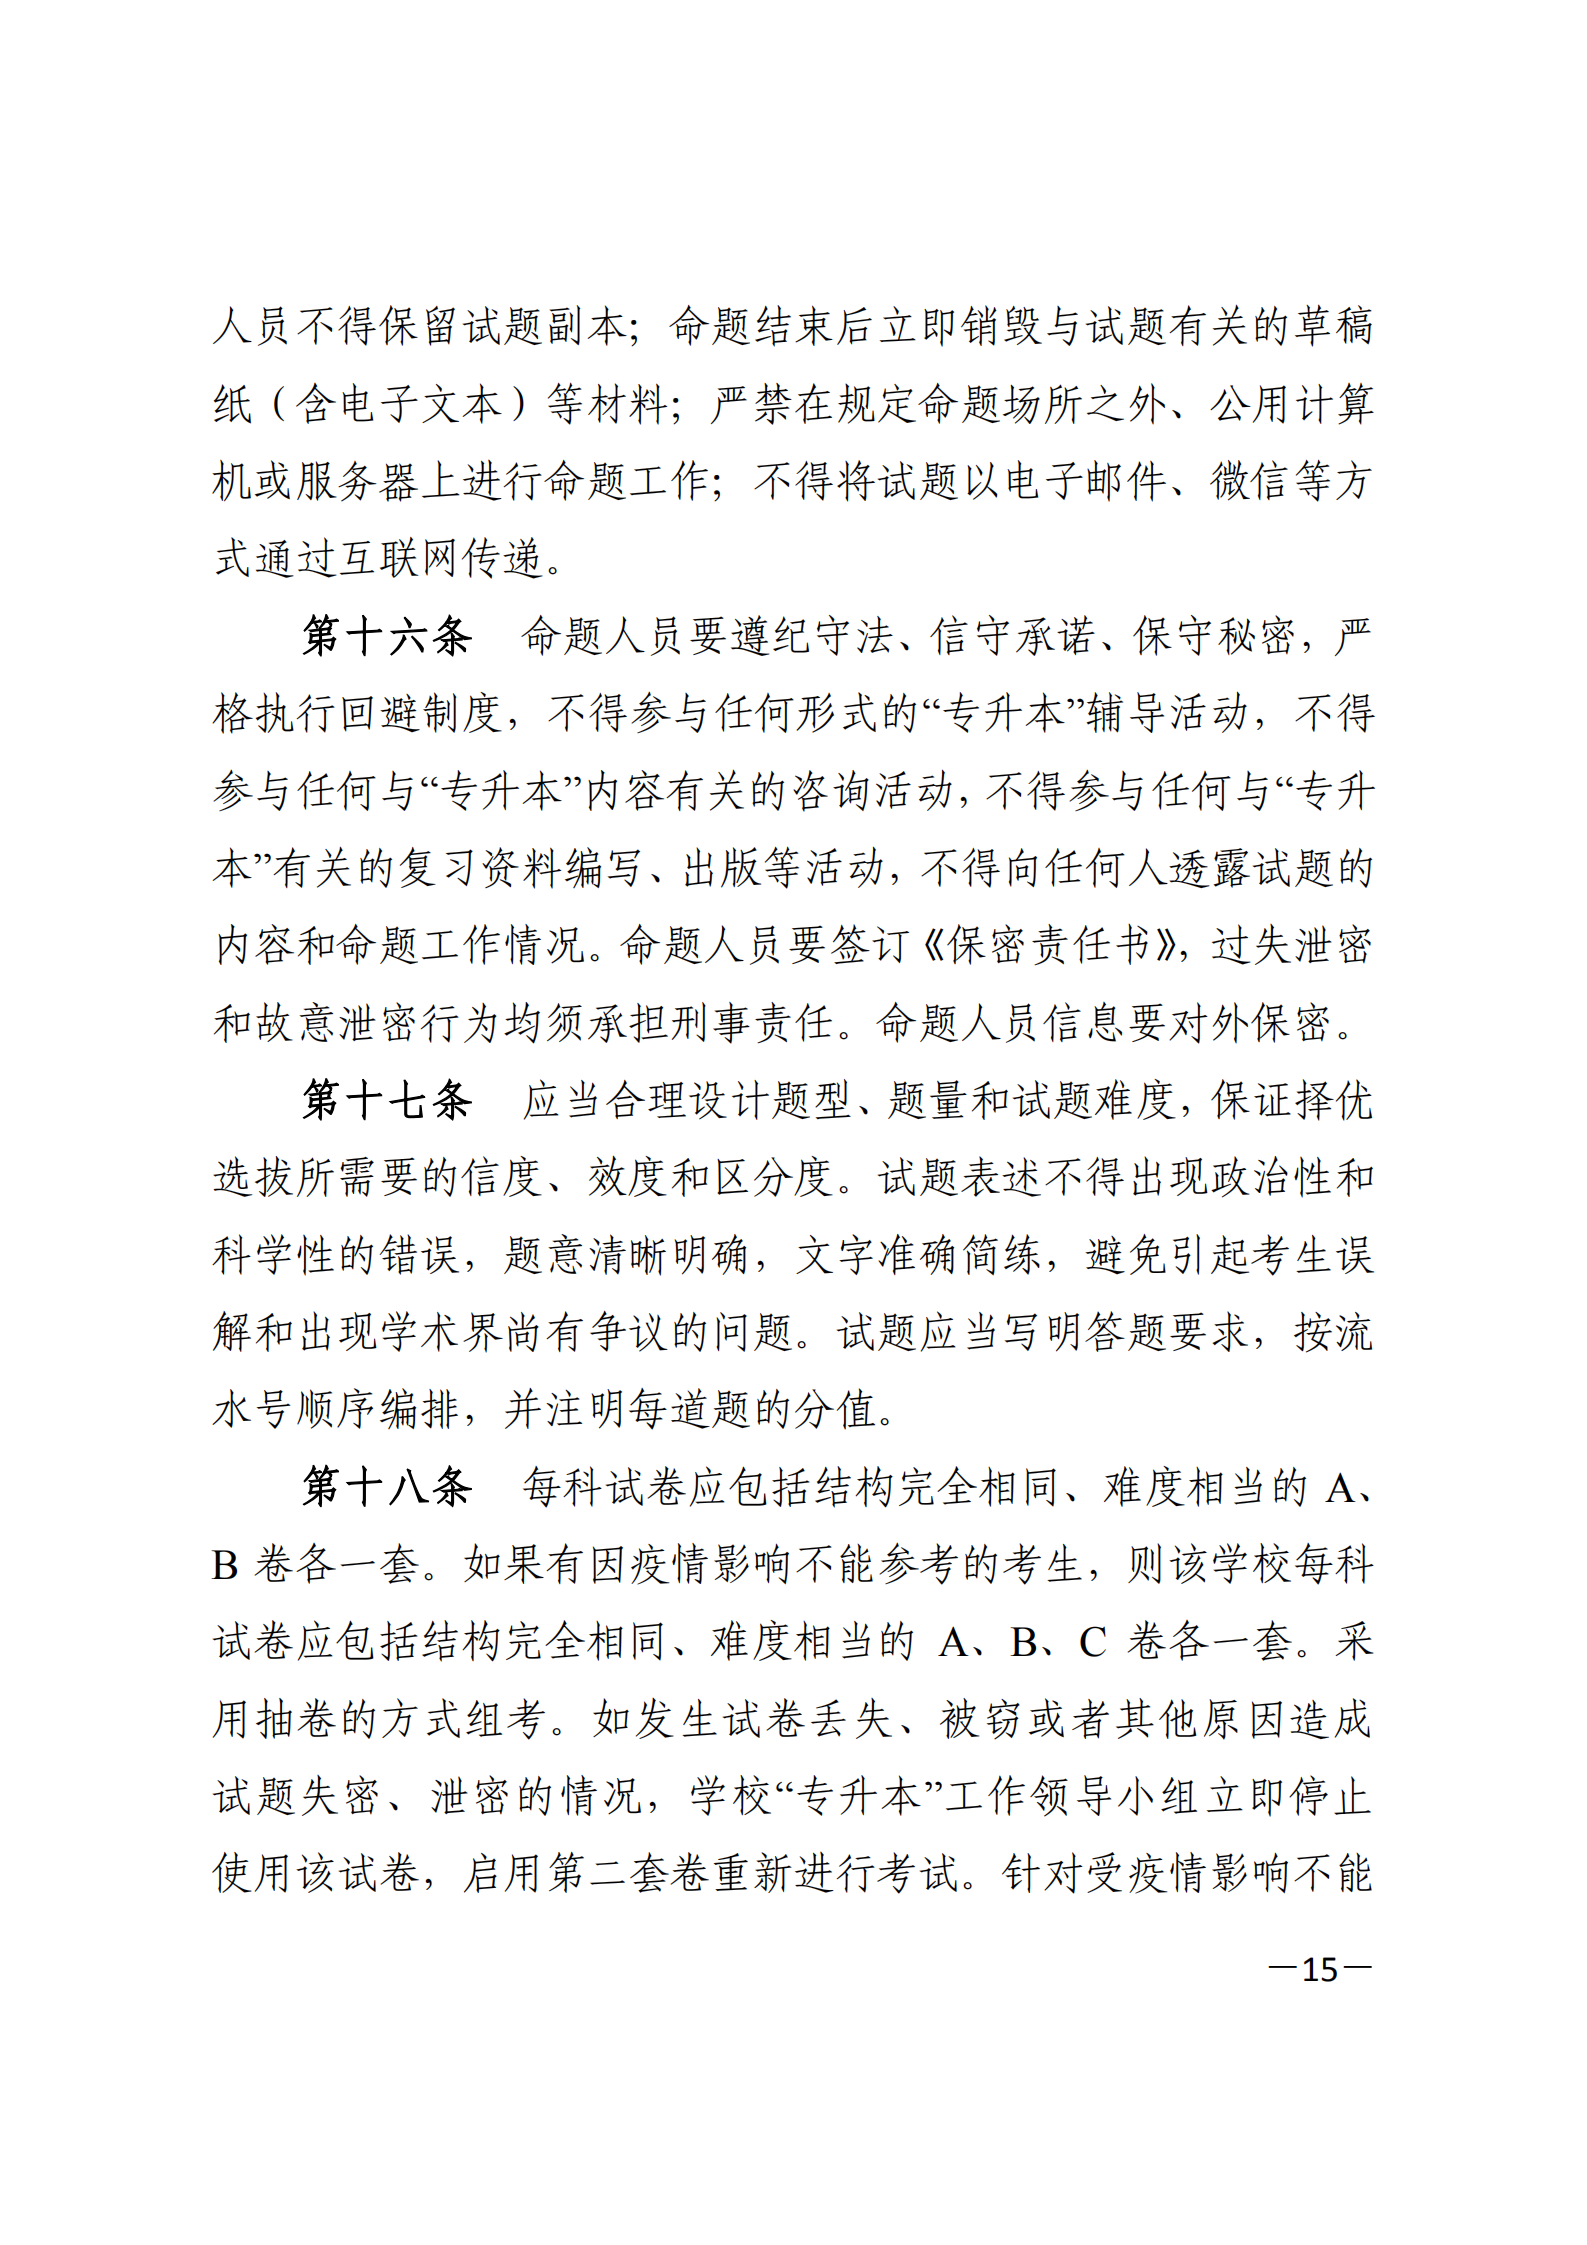 3_湘教发〔2021〕2号 关于印发《2021年湖南省普通高等教育“专升本”考试招生工作实施方案》的通知_14.png